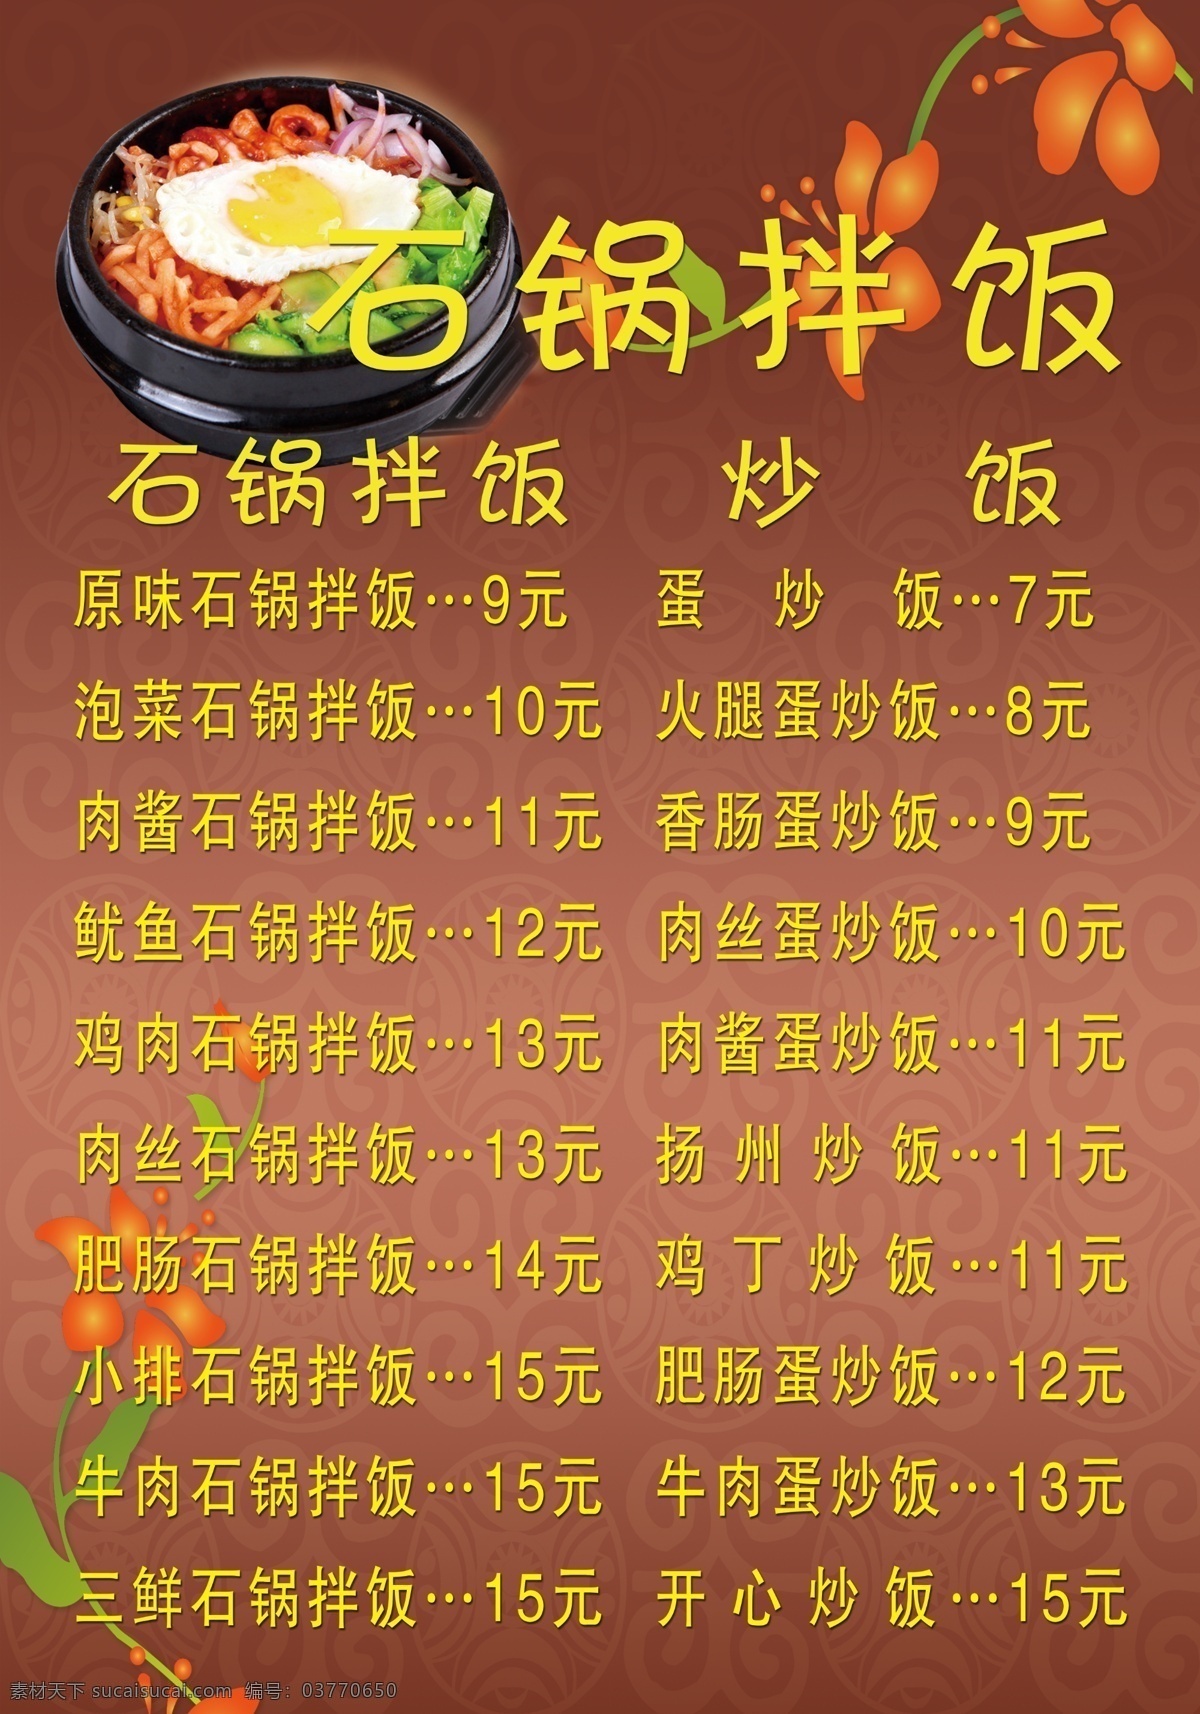 石 锅 拌饭 菜单 石锅拌饭 炒菜 菜单打印 海报 红色